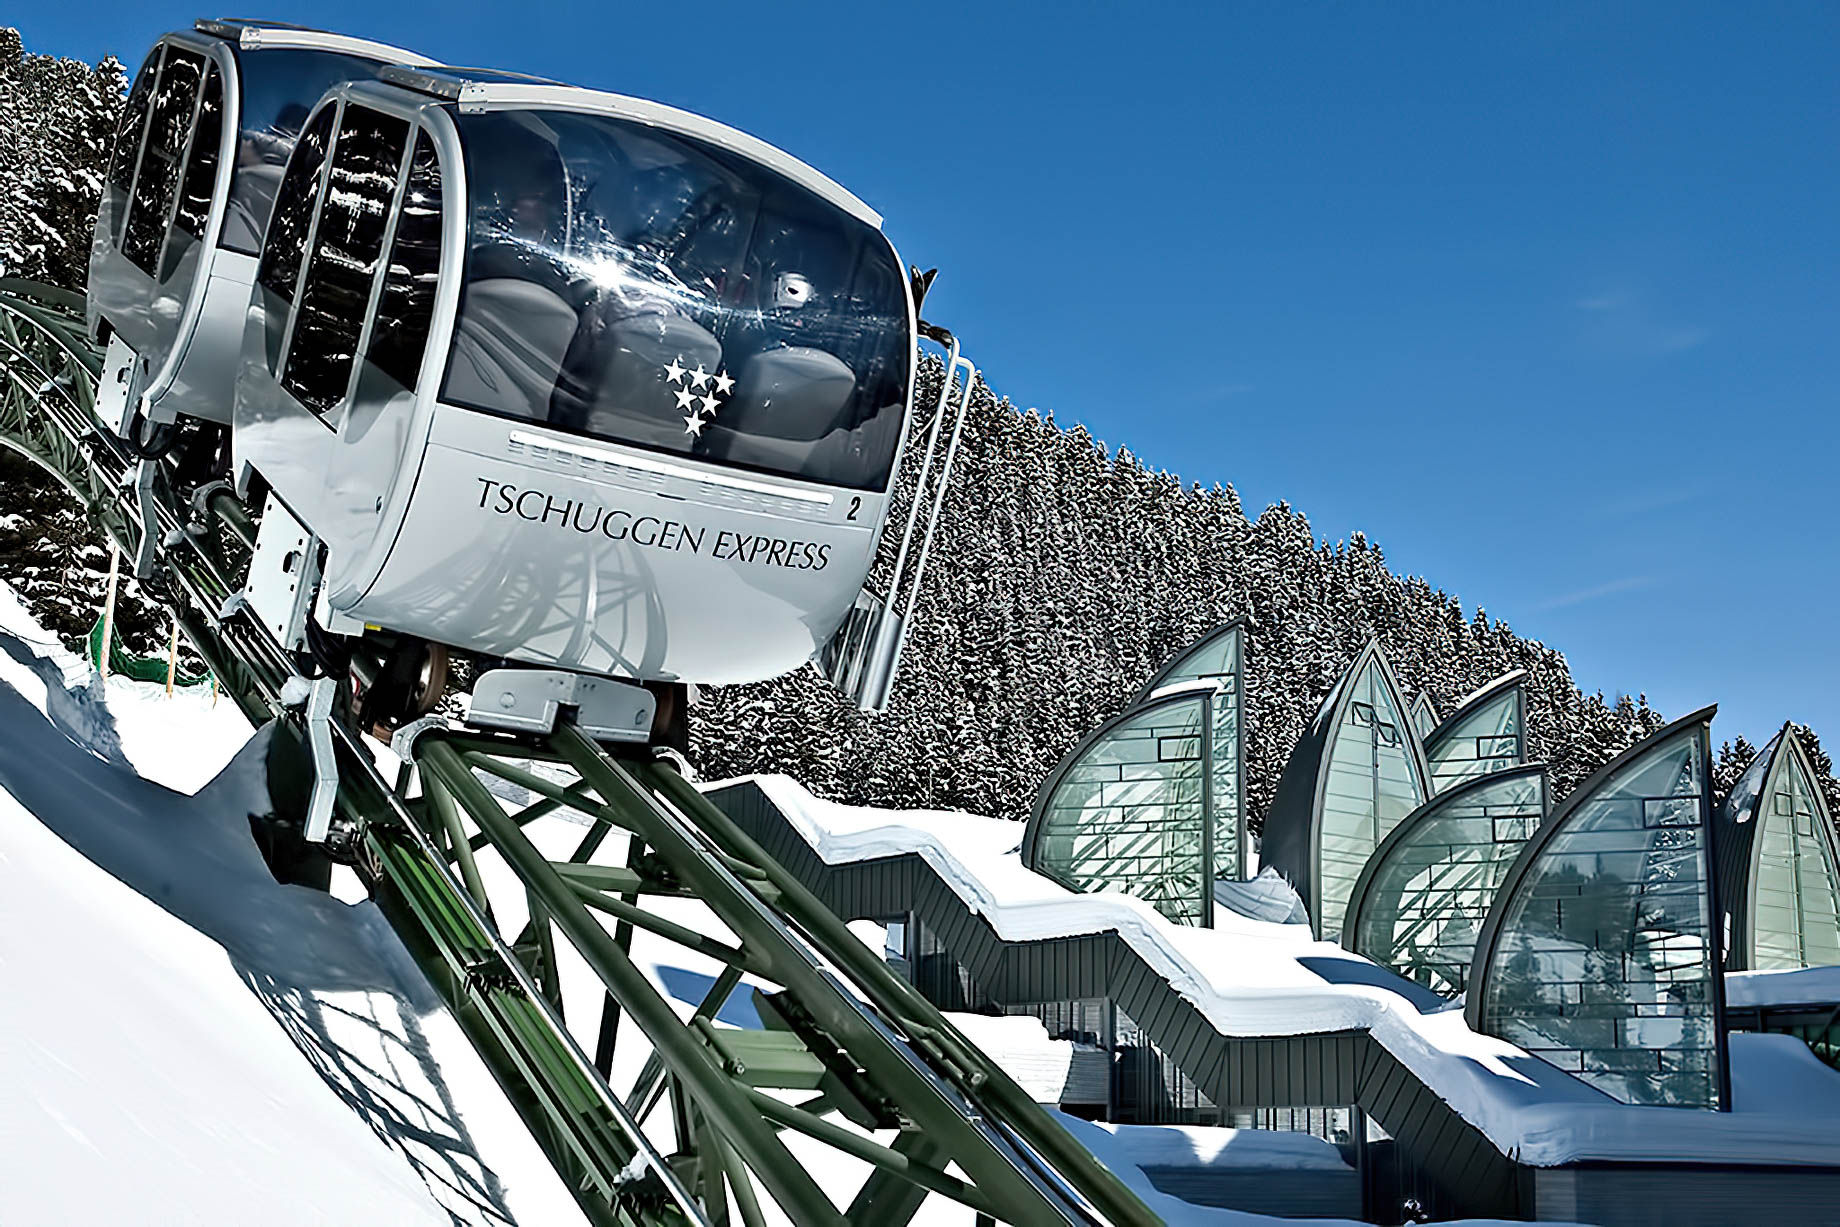 Tschuggen Grand Hotel – Arosa, Switzerland – Winter Tschuggen Express